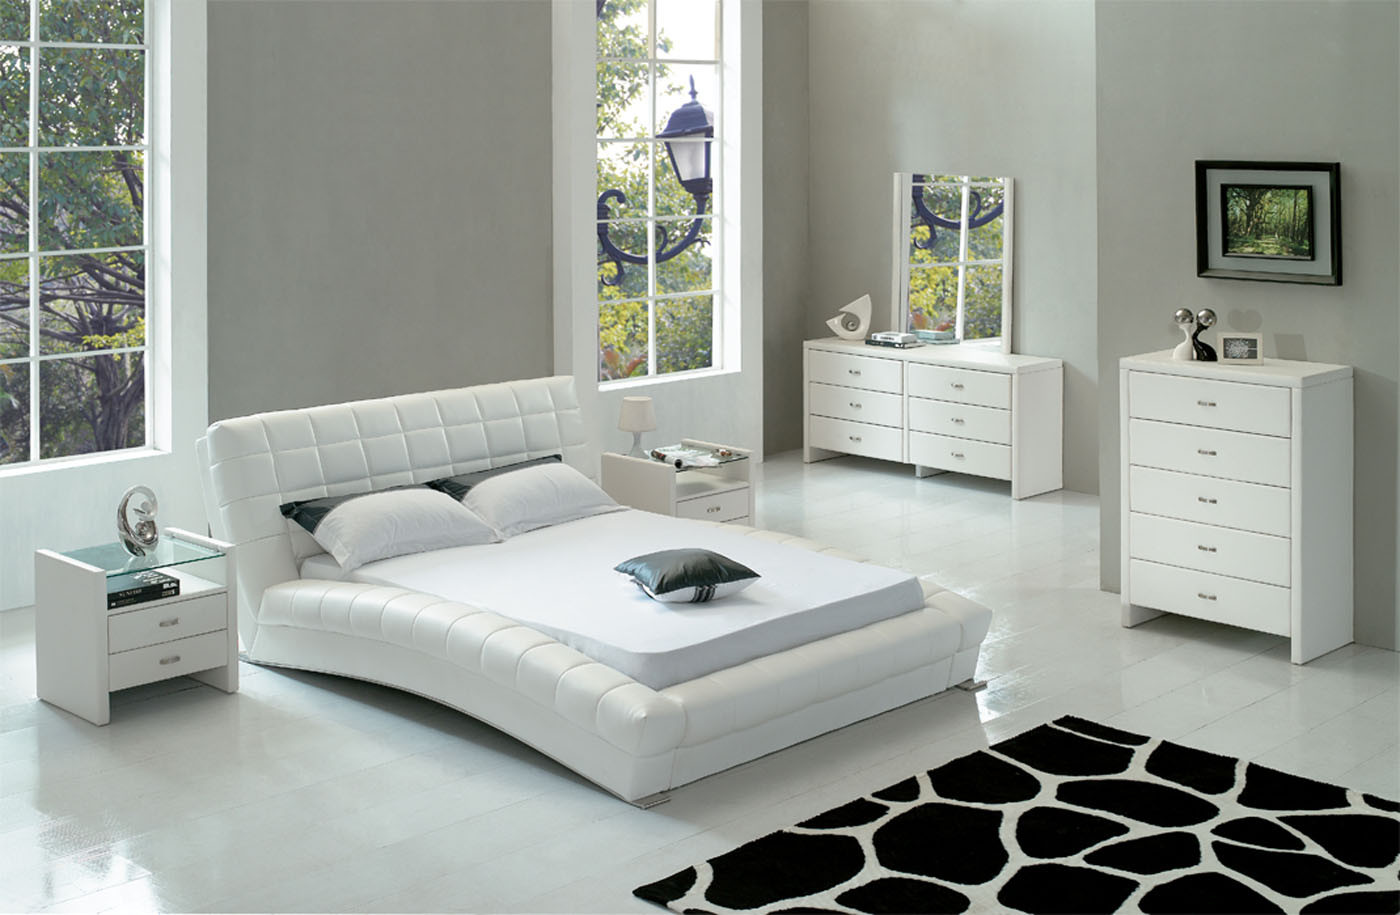 White Modern Bedroom Set
 Modern Bedroom Furniture The Platform Style Amaza Design